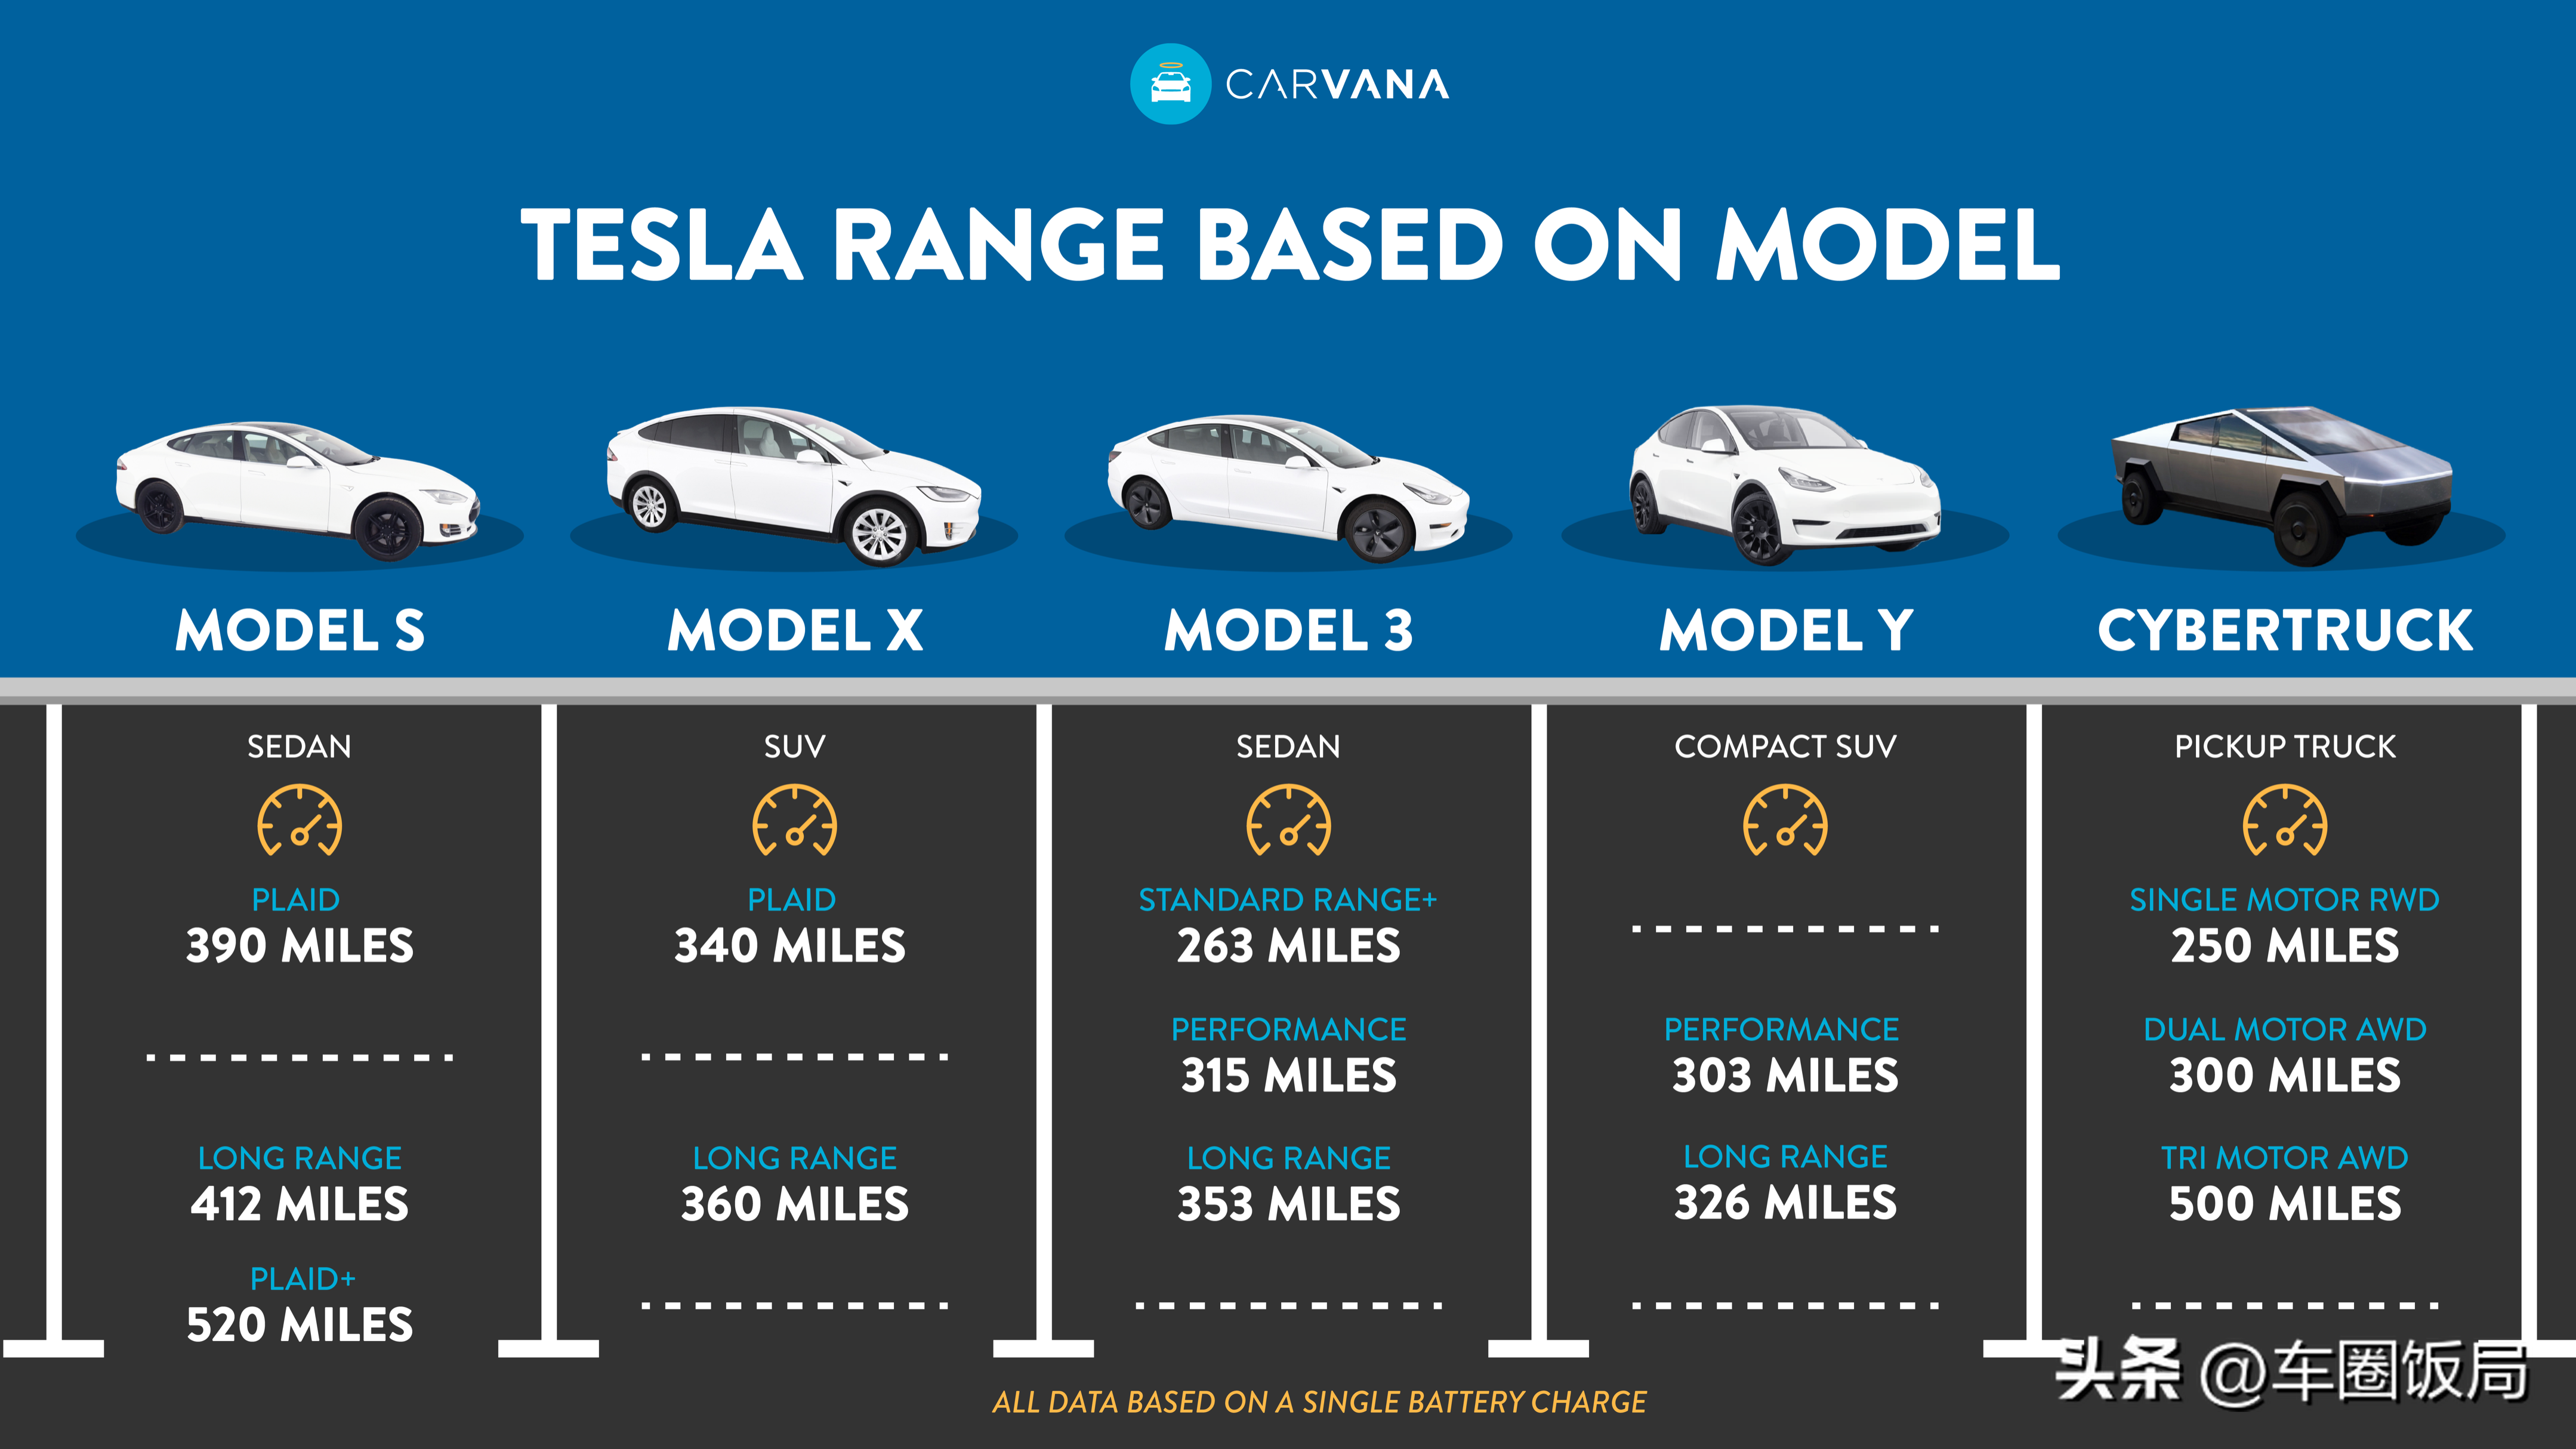 「加速踏板存安全隐患」特斯拉召回超 110 万辆Model 3、ModelY